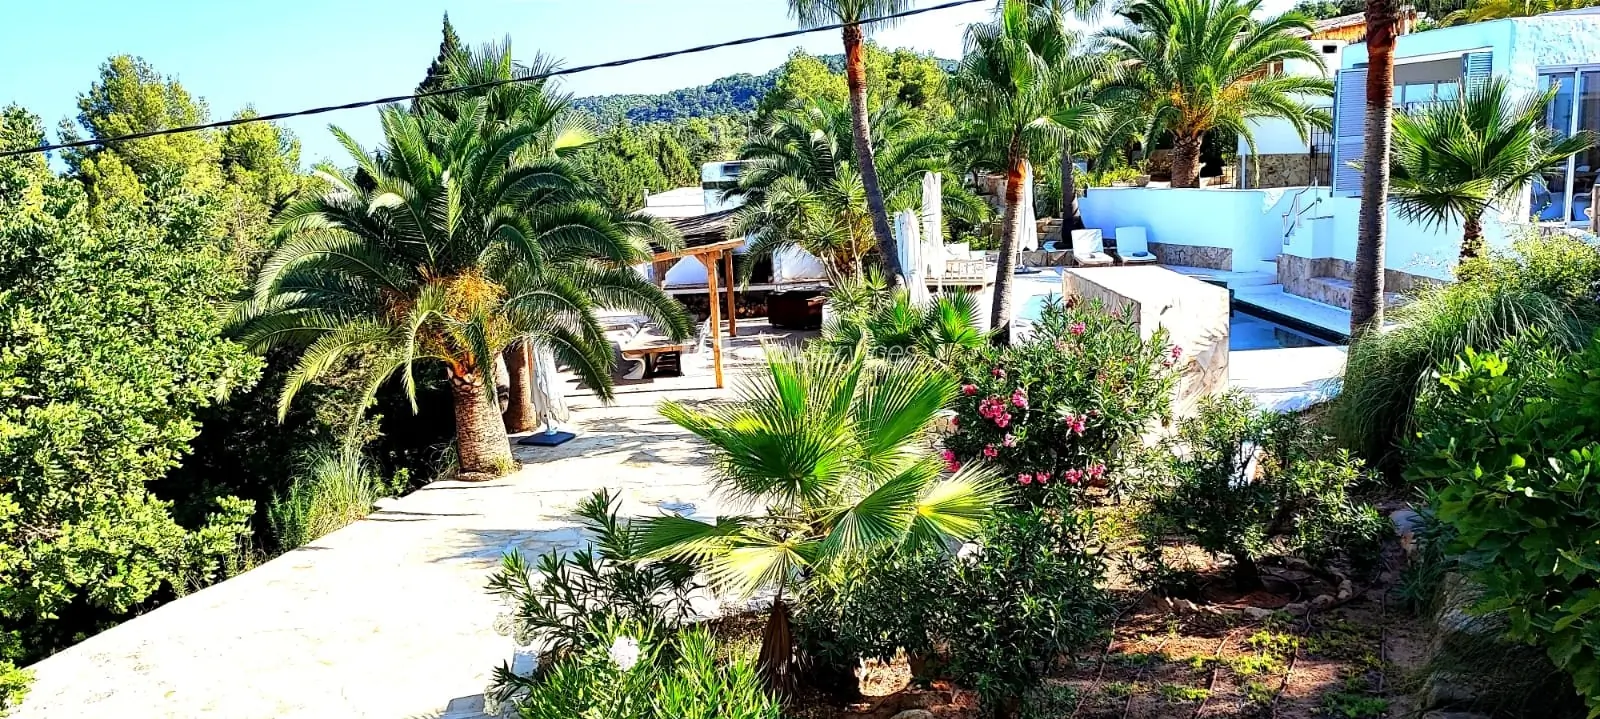 Finca reformada con licencia turistica y jardin tropical cerca de Cala Tarida para comprar